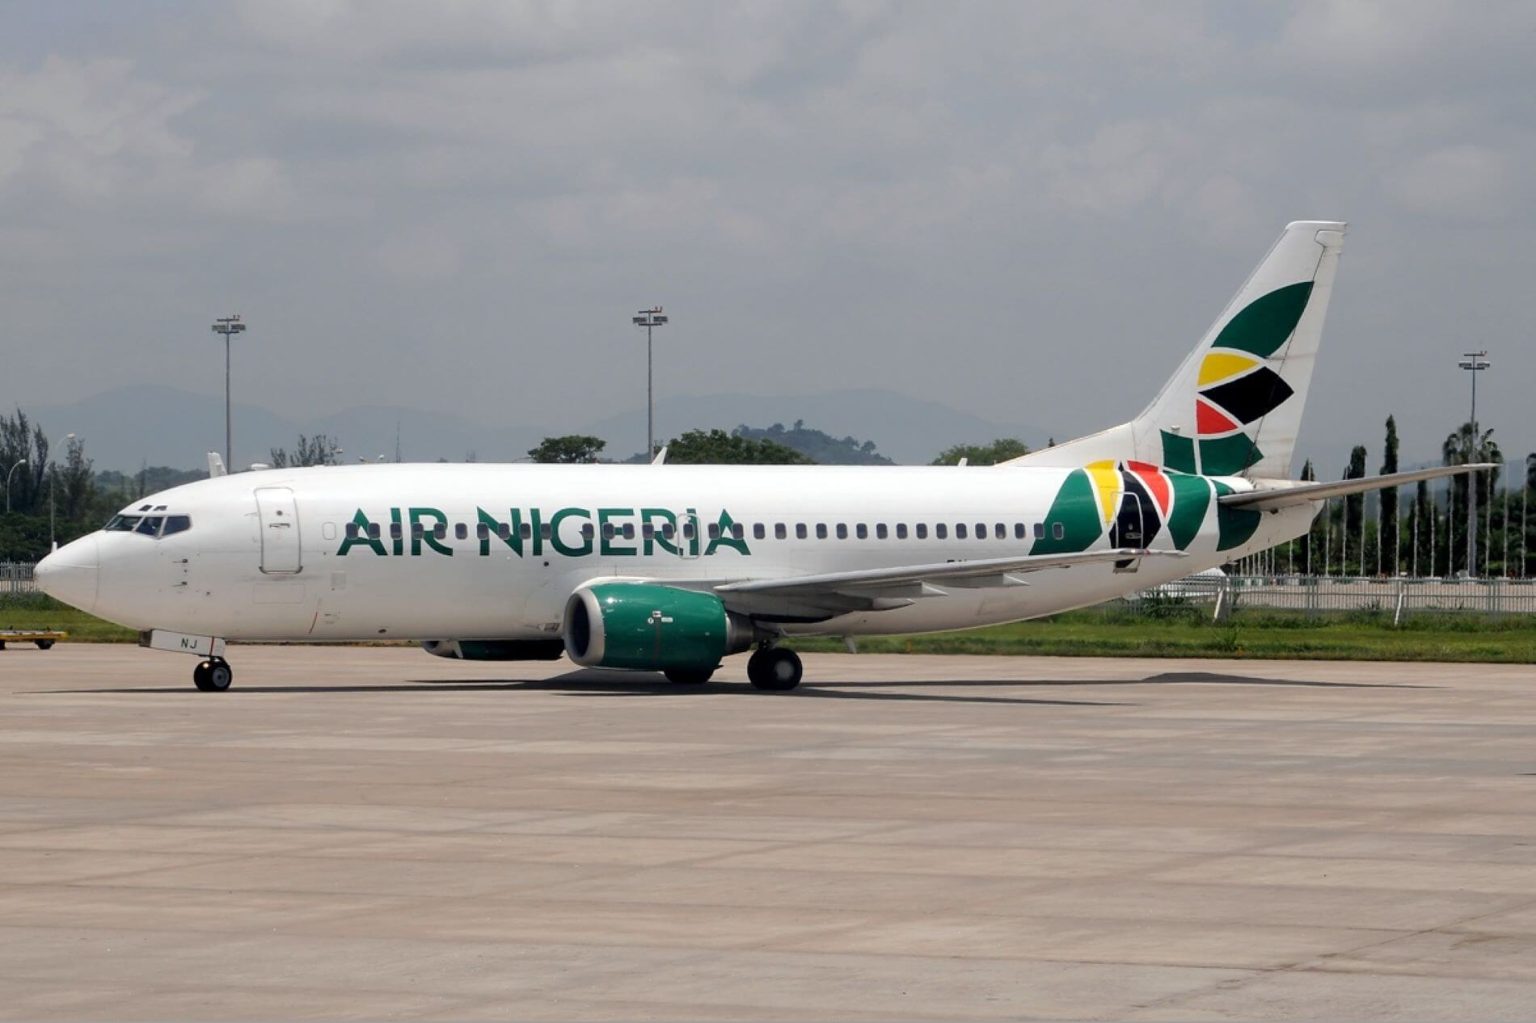 Jet fuel shortage threatens to halt the aviation industry in Nigeria. www.theexchange.africa